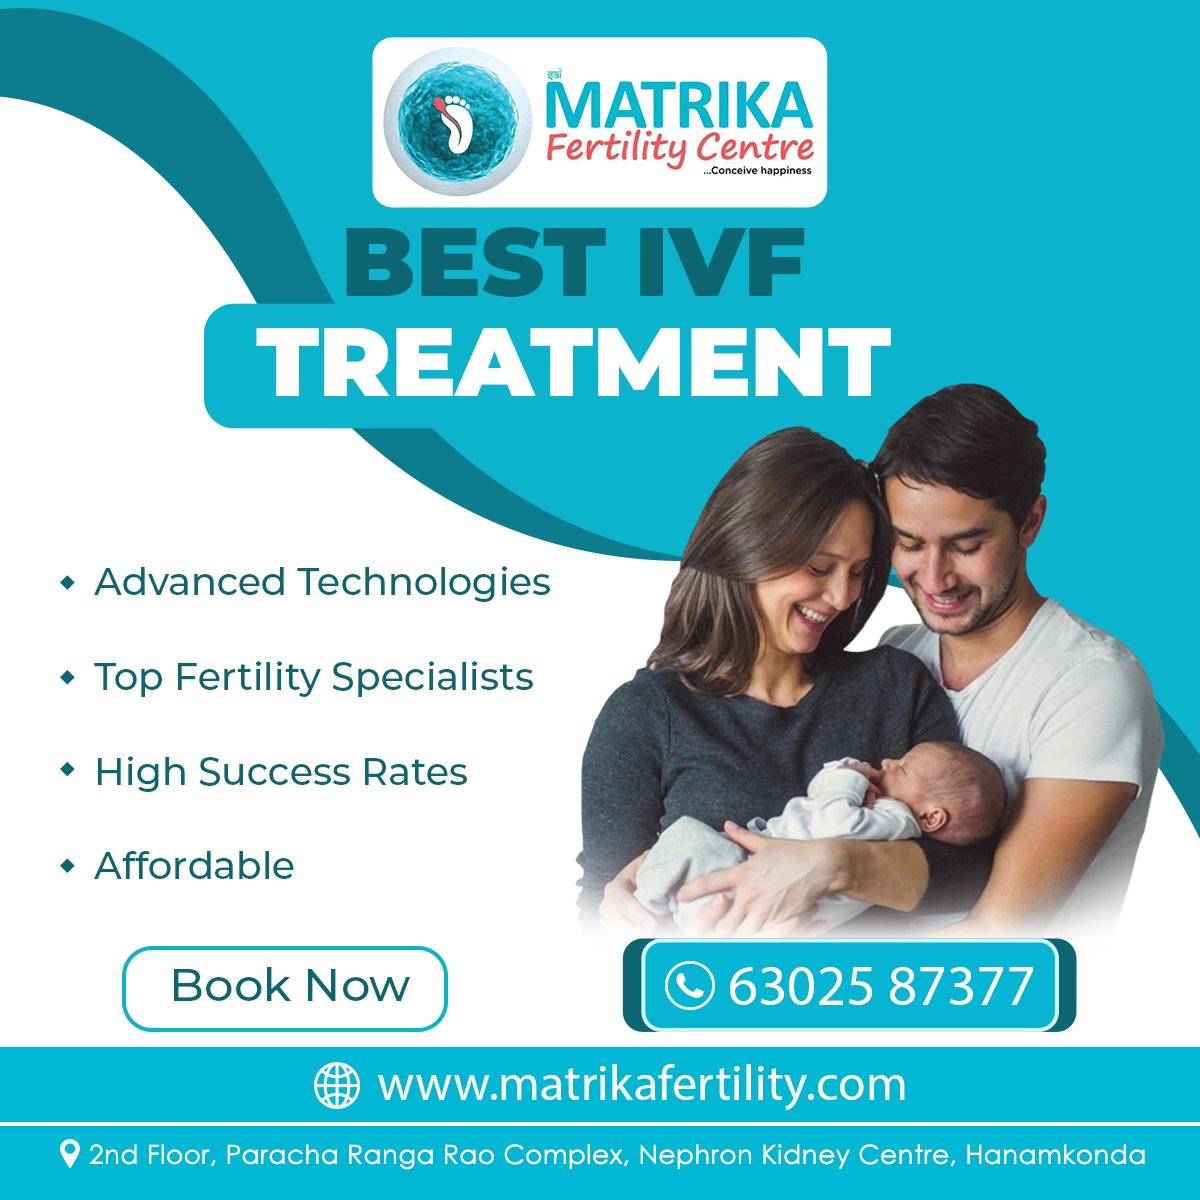  Best IVF Treatment in Warangal - MatrikaIVF